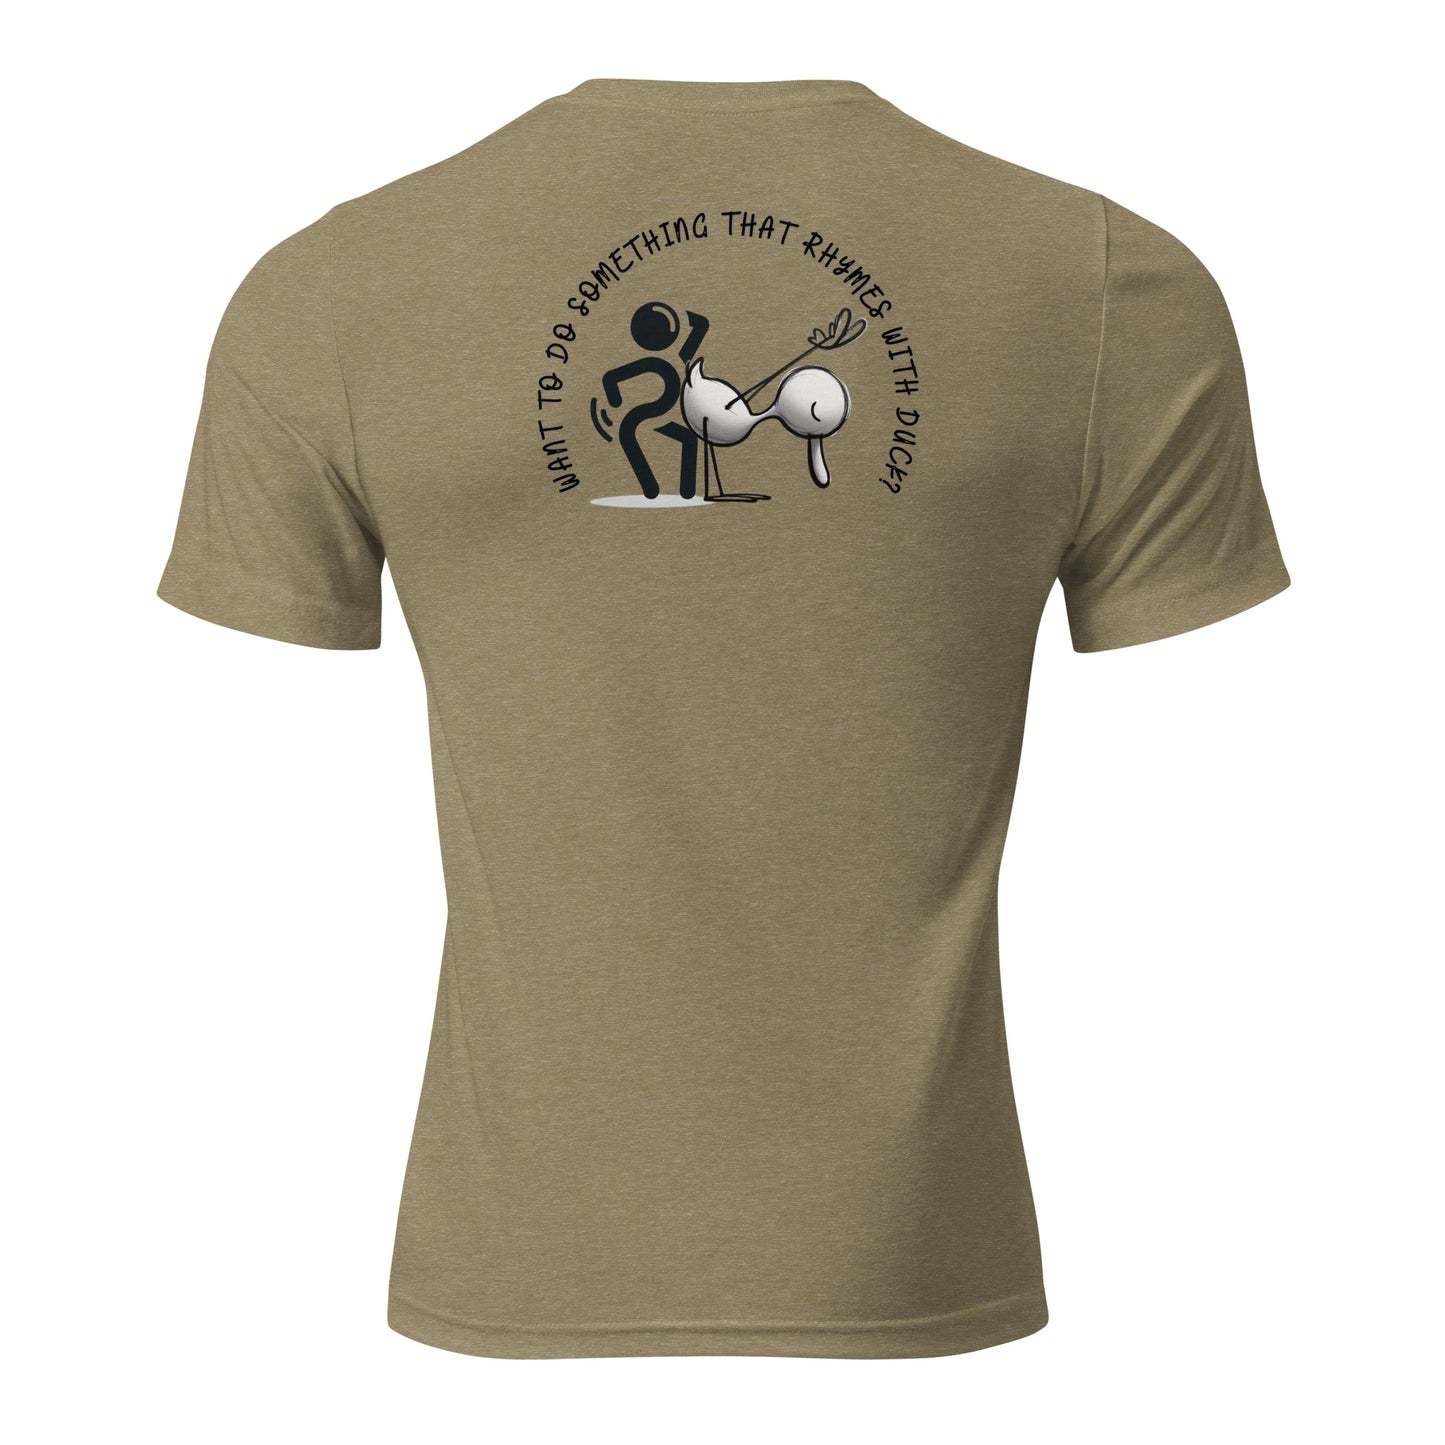 a t - shirt with an image of a man and a dog on it